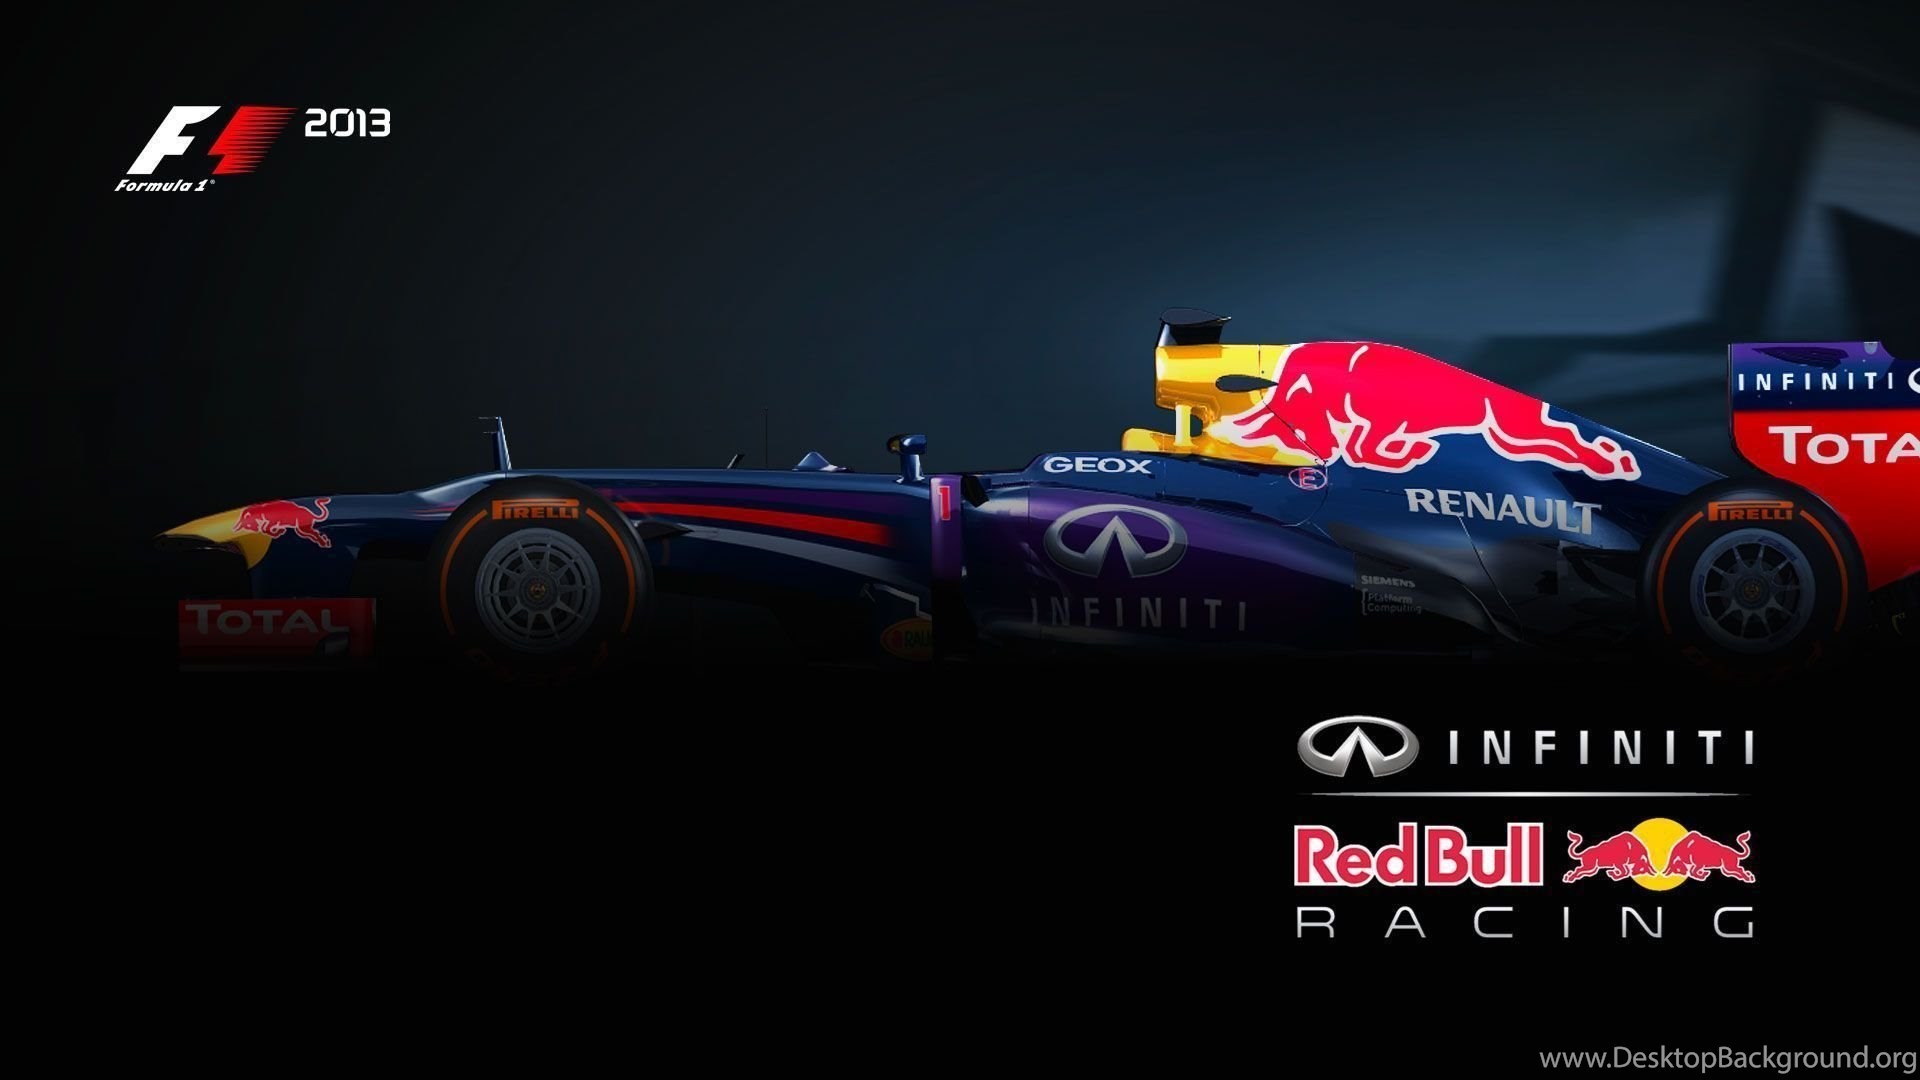 1920x1080 Red Bull Racing HD Wallpaper, Red Bull Racing Images